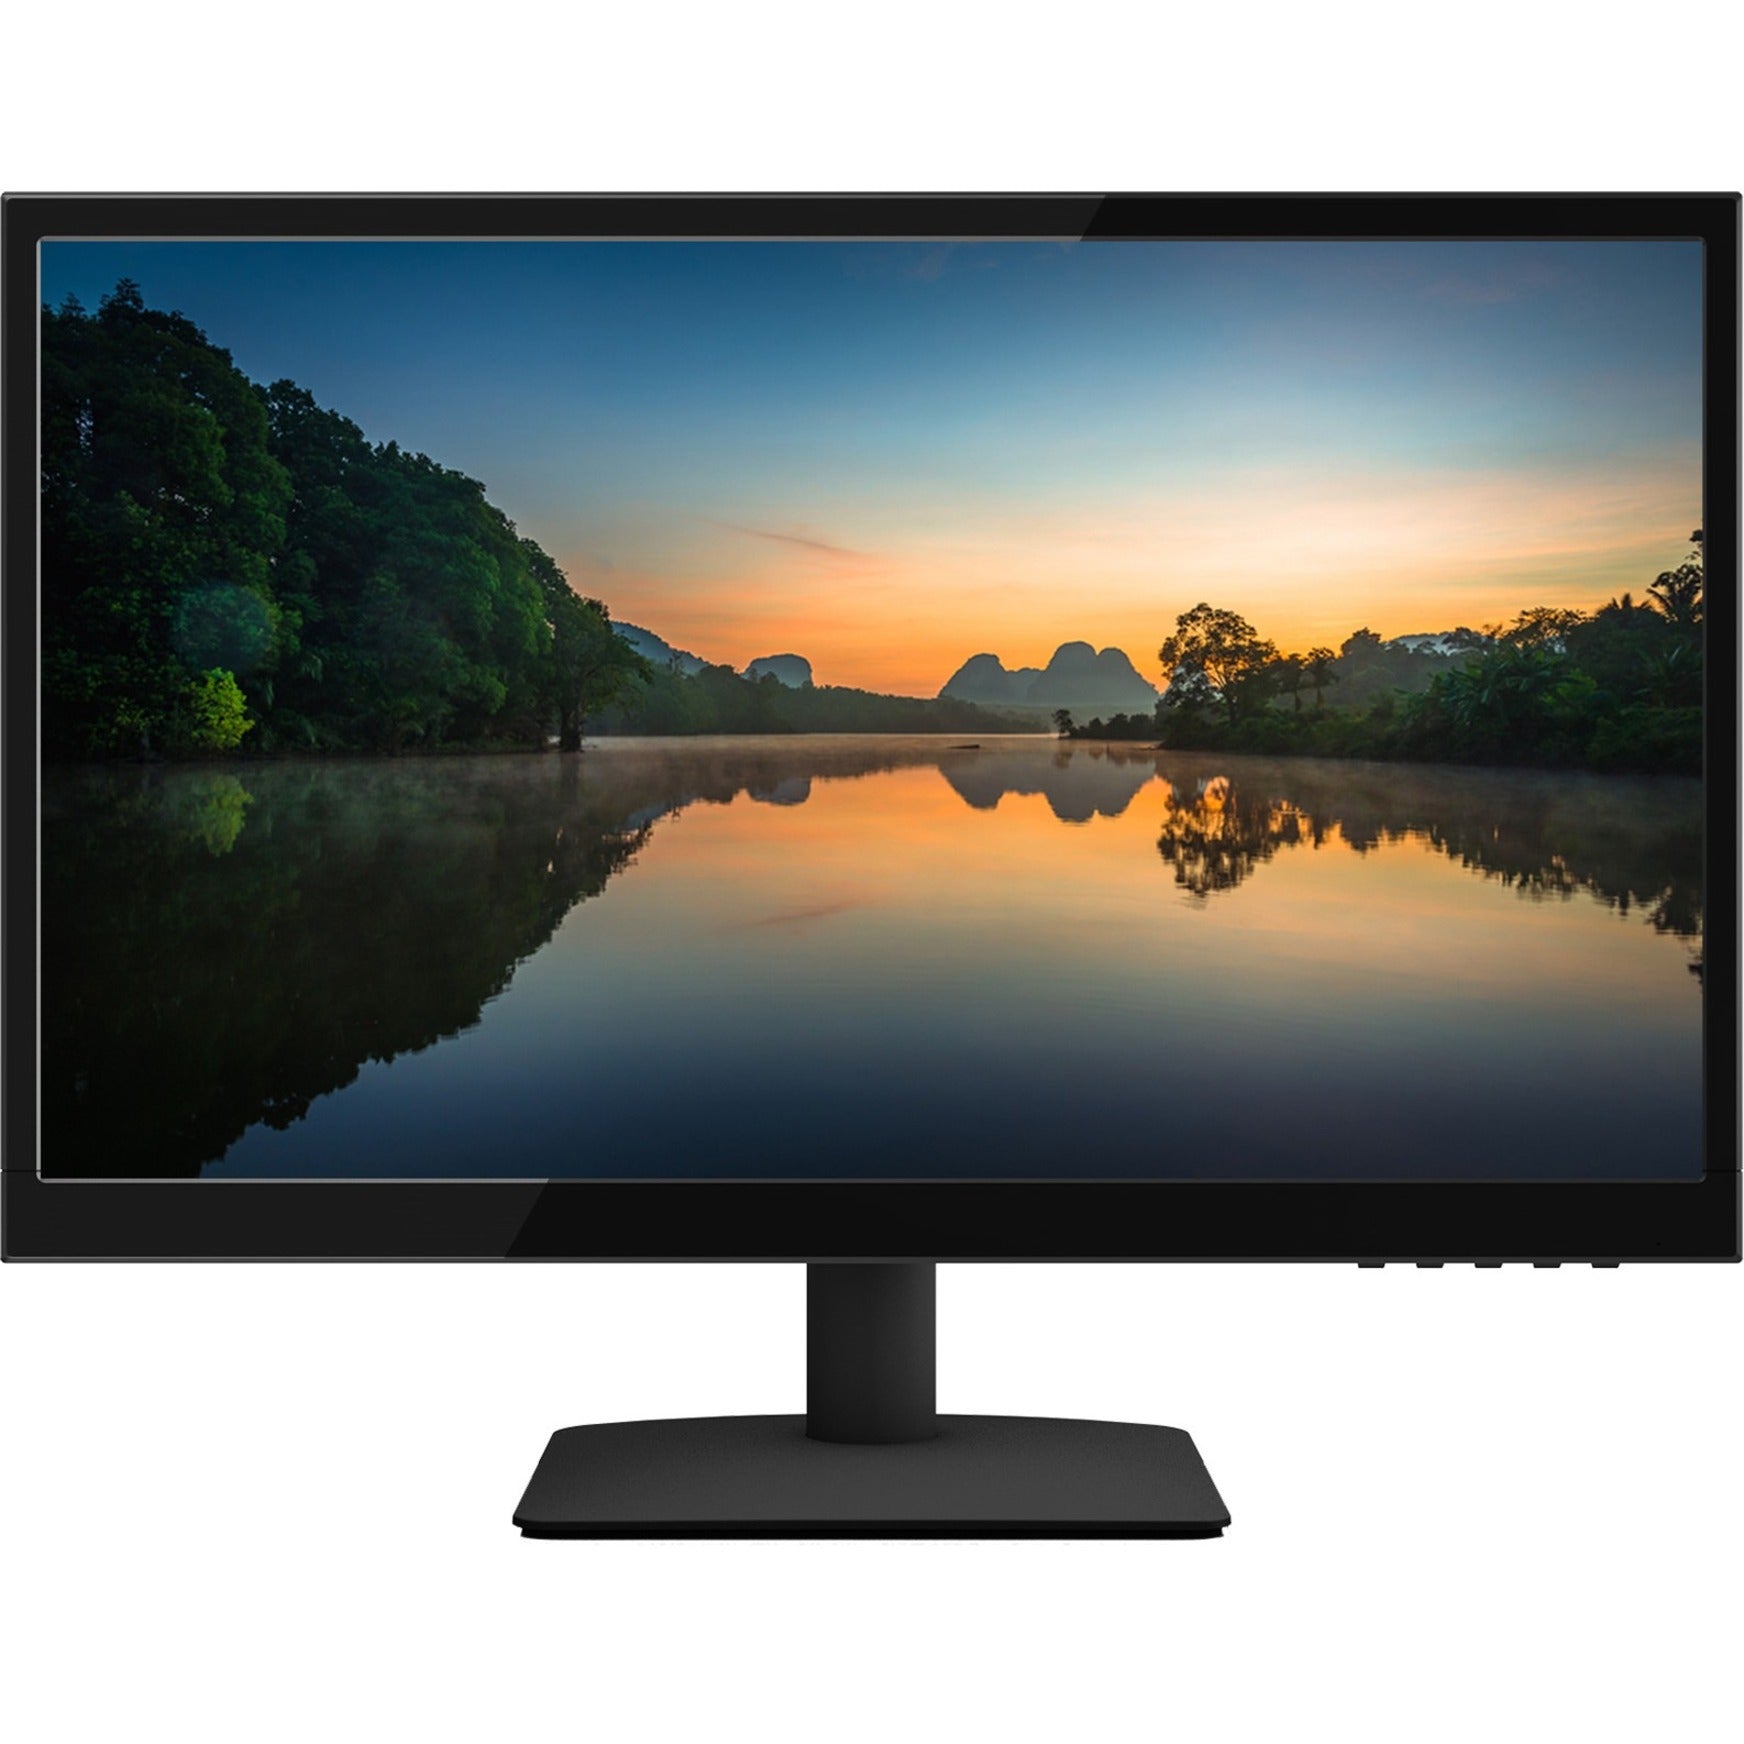 Planar 997-9044-00 PLL2250MW 22" LCD Monitor, Full HD, 16:9, 3-Year Warranty